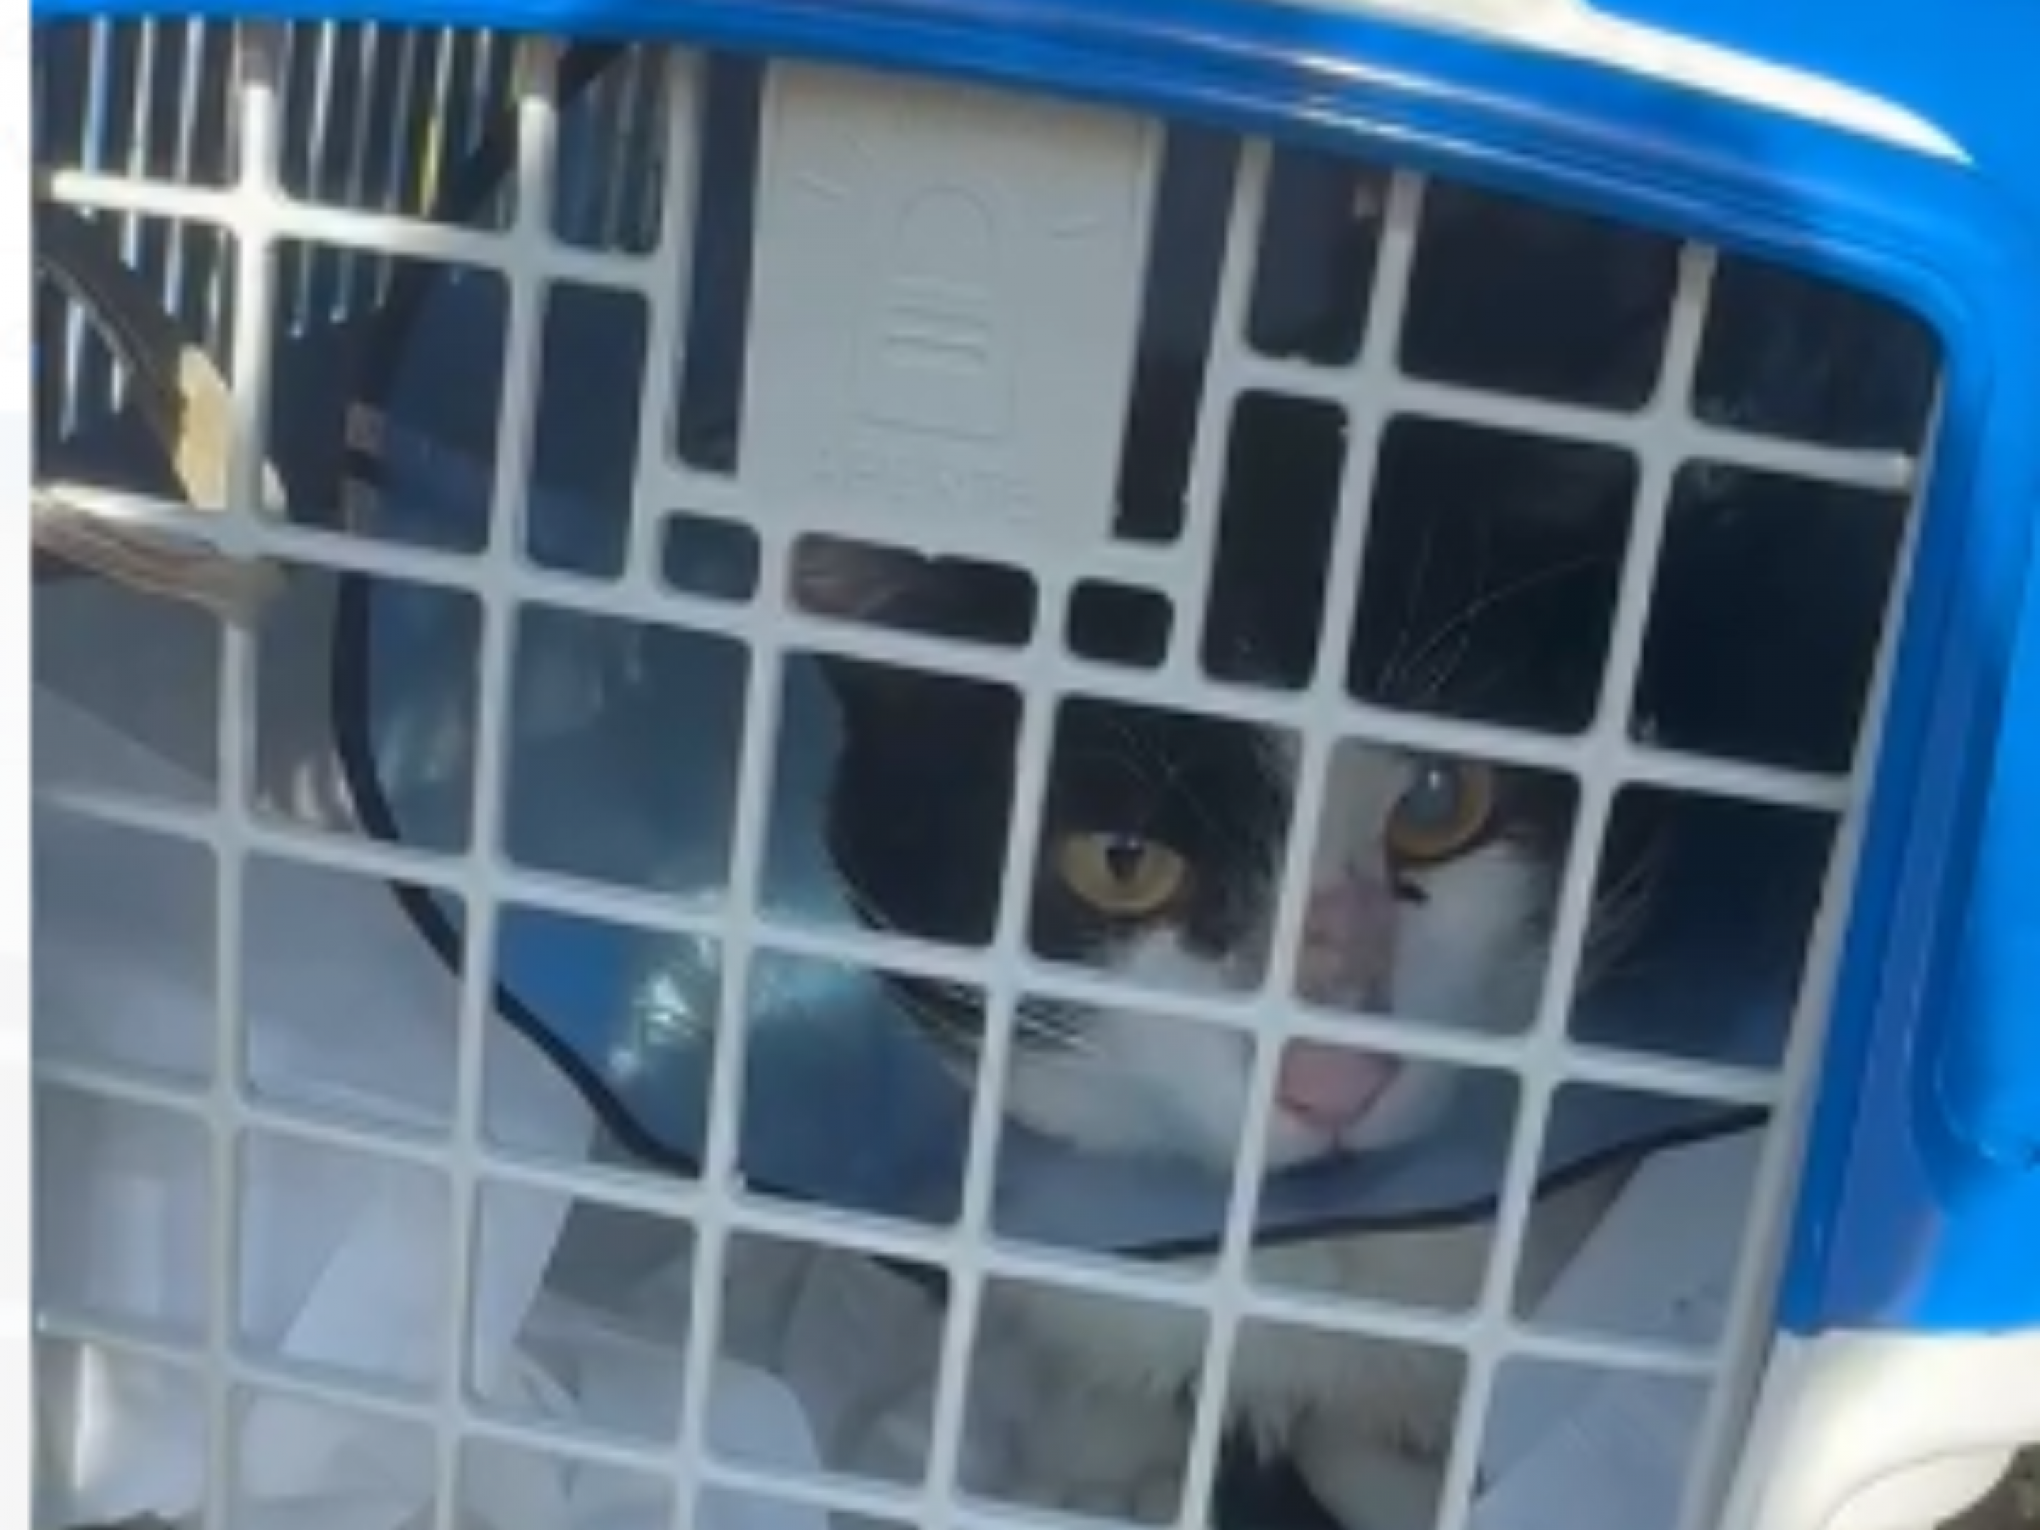 Gato se machuca durante enchente e desfecho acaba em apreensão em clinica veterinária e ação na Justiça